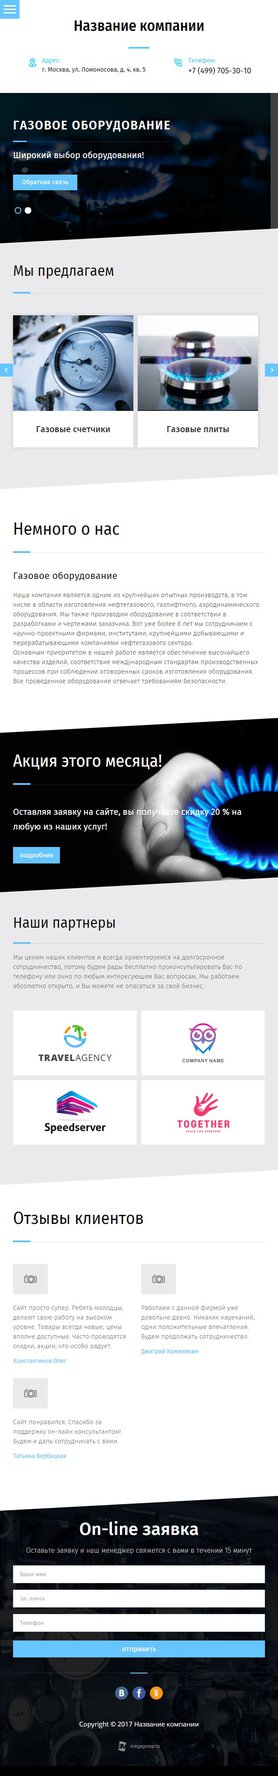 Готовый Сайт-Бизнес № 1869044 - Газовое оборудование (Мобильная версия)